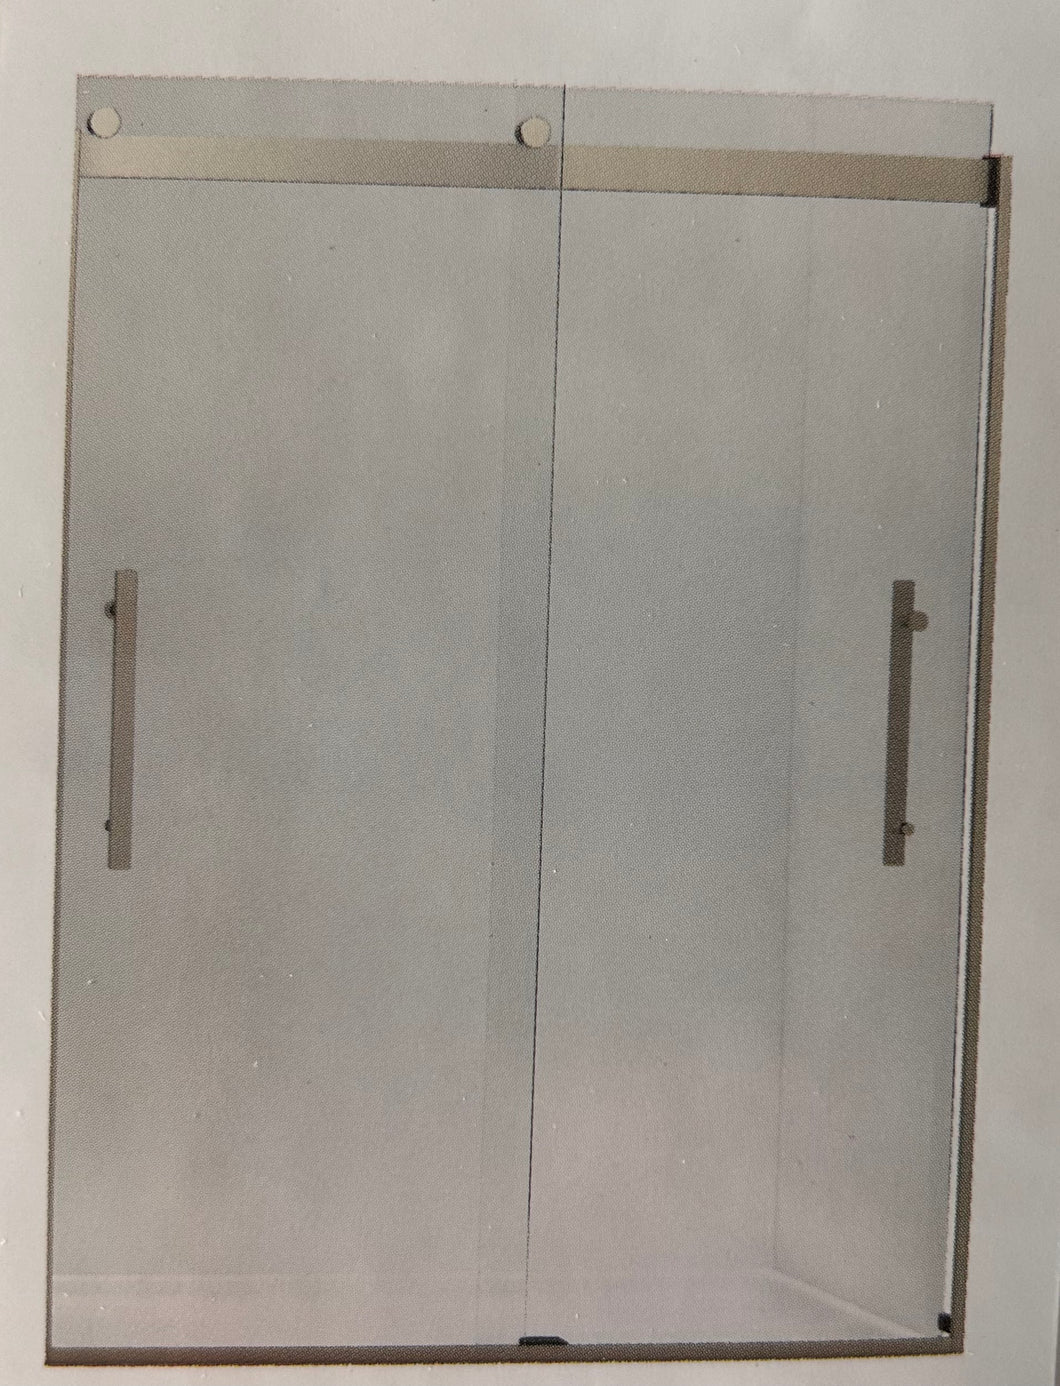 Kohler Tellin 60” Shower Door! (Brand New In The Box)  -Brand New in The Box